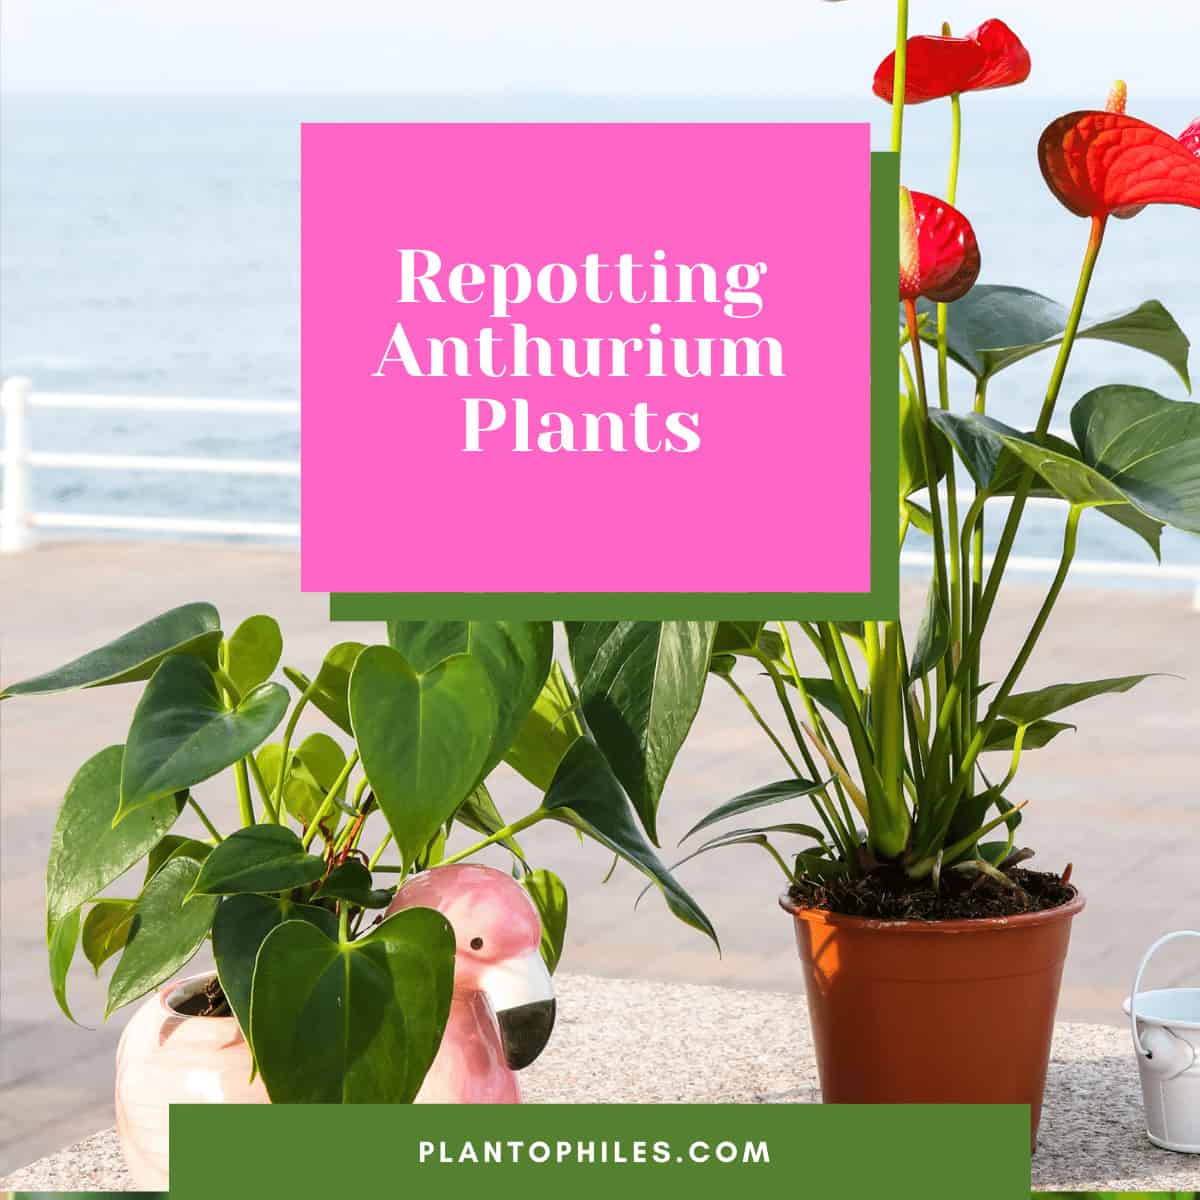 Repotting Anthurium Plants